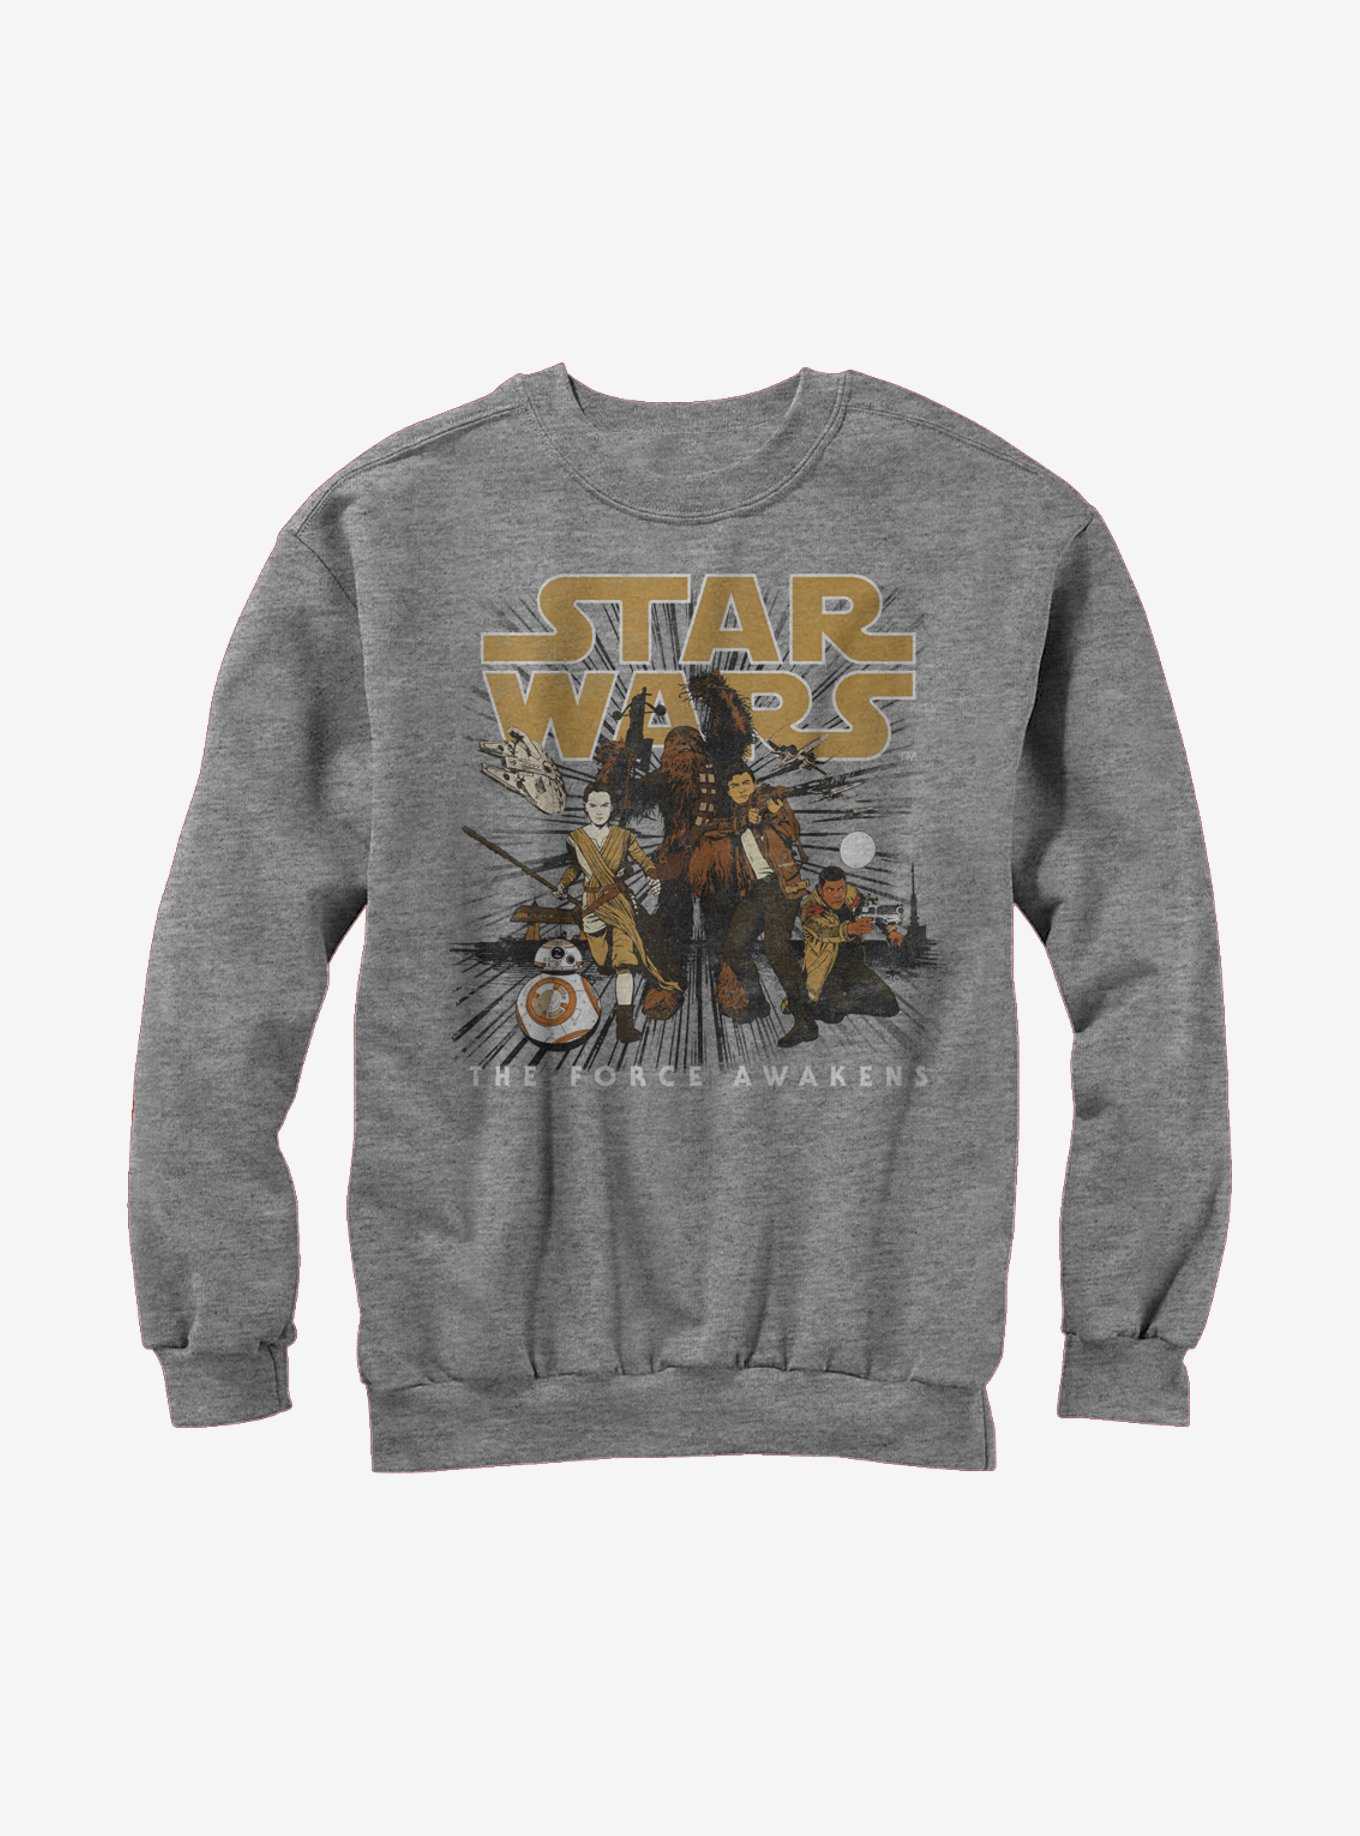 Star Wars Episode VII The Force Awakens Resistance Crew Sweatshirt, , hi-res